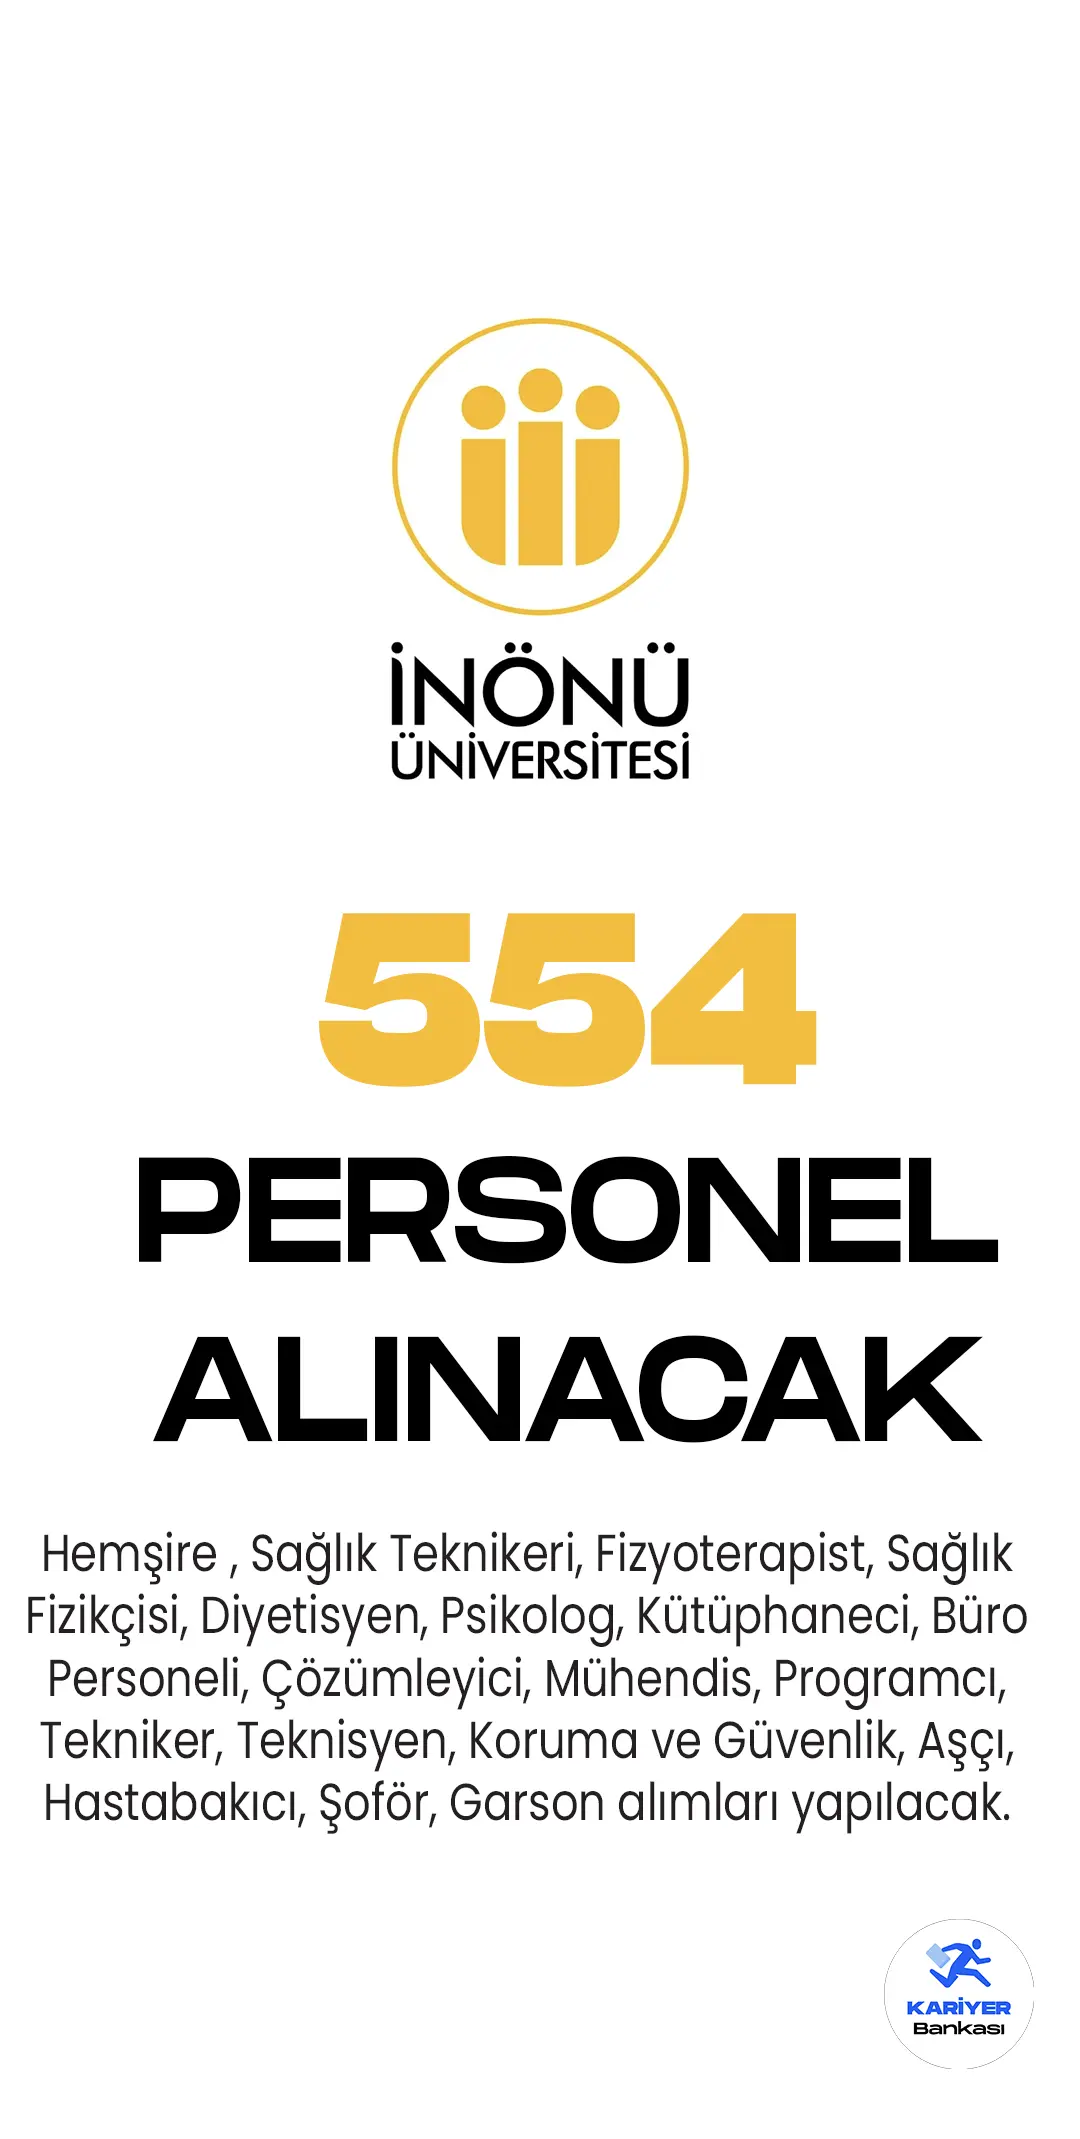 İnönü Üniversitesi 554 personel alımı yapacak. 554 personel alımı başvuruları 12-26 Mayıs tarihlerinde alınacak.